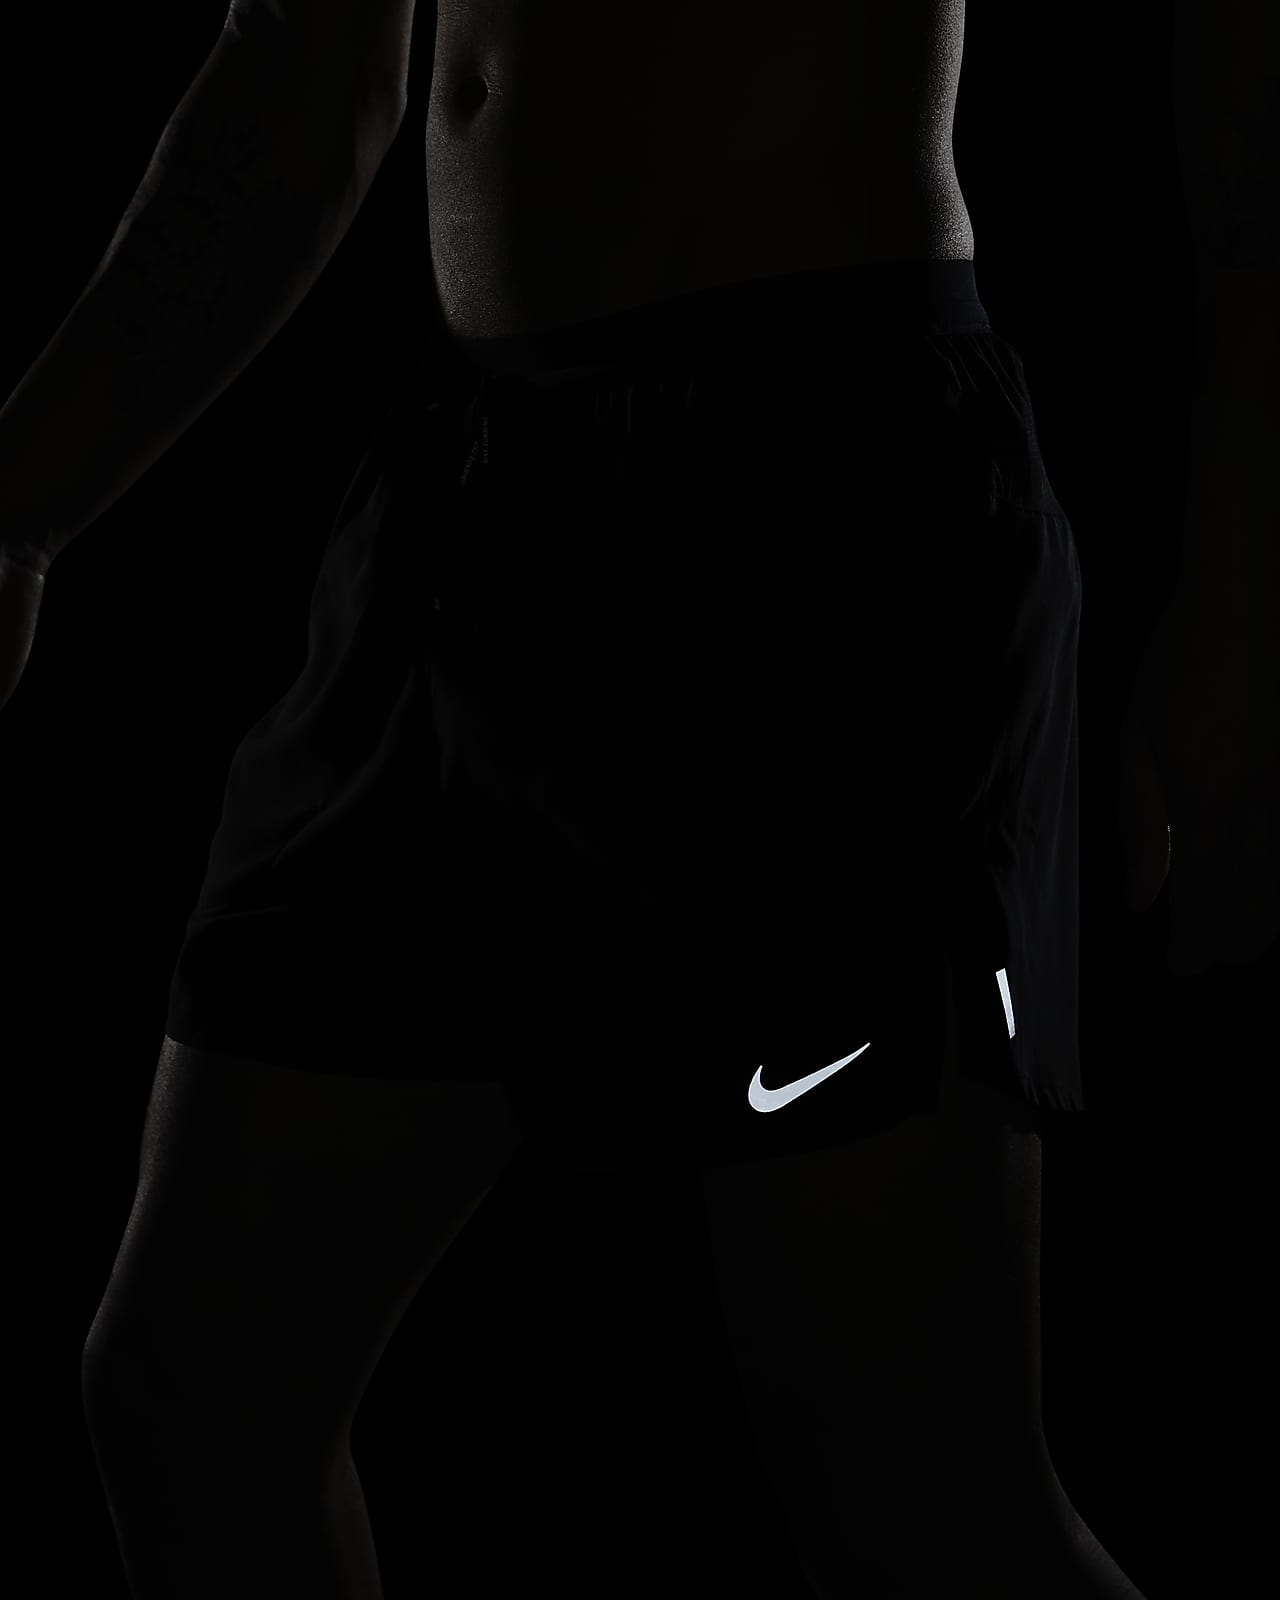 Dispuesto Soldado patrón Nike Flex Stride Men's 5" Brief Running Shorts. Nike.com